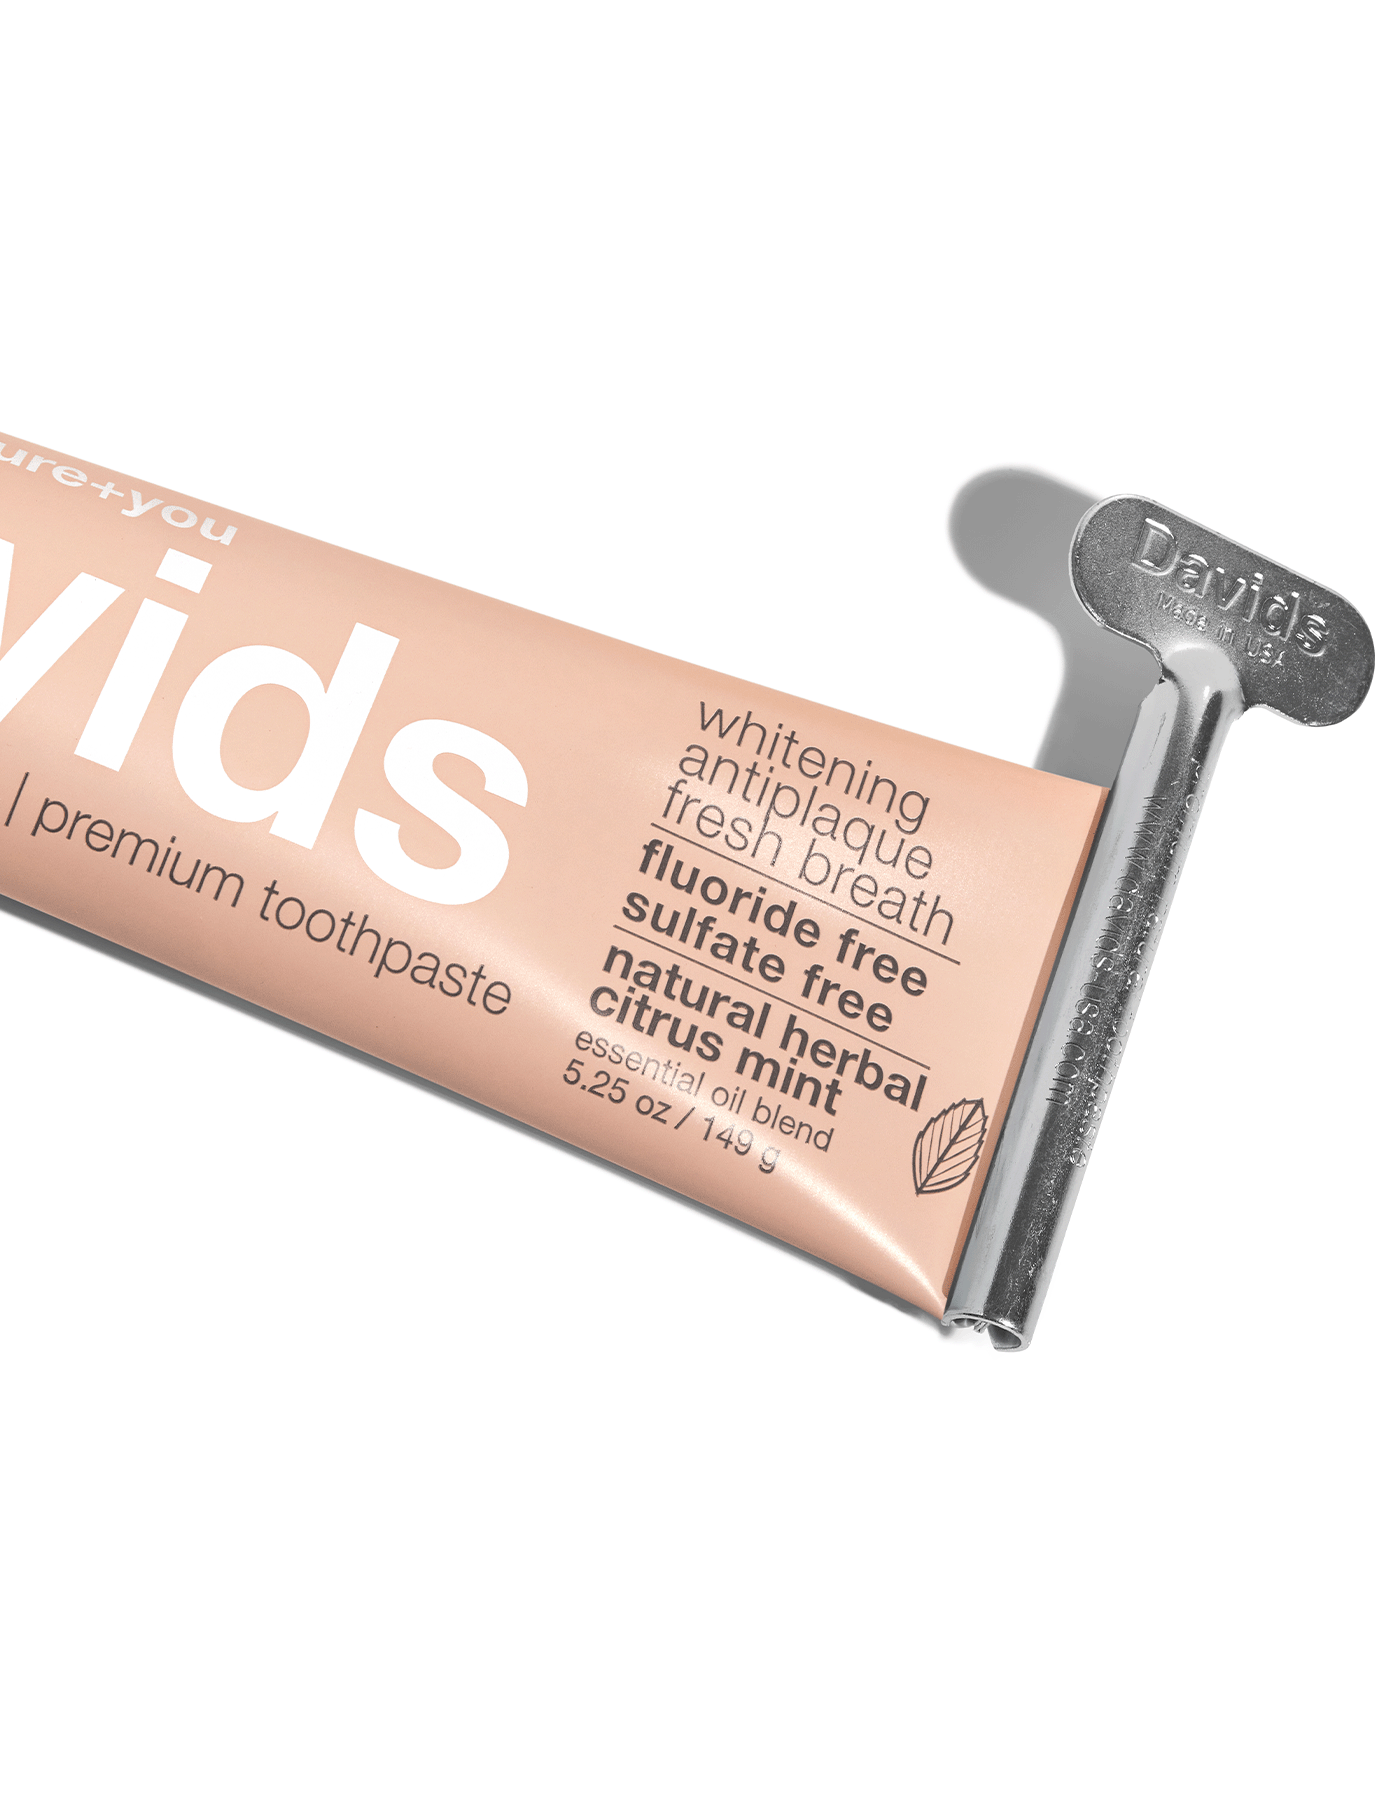 Davids premium toothpaste  /  herbal citrus peppermint